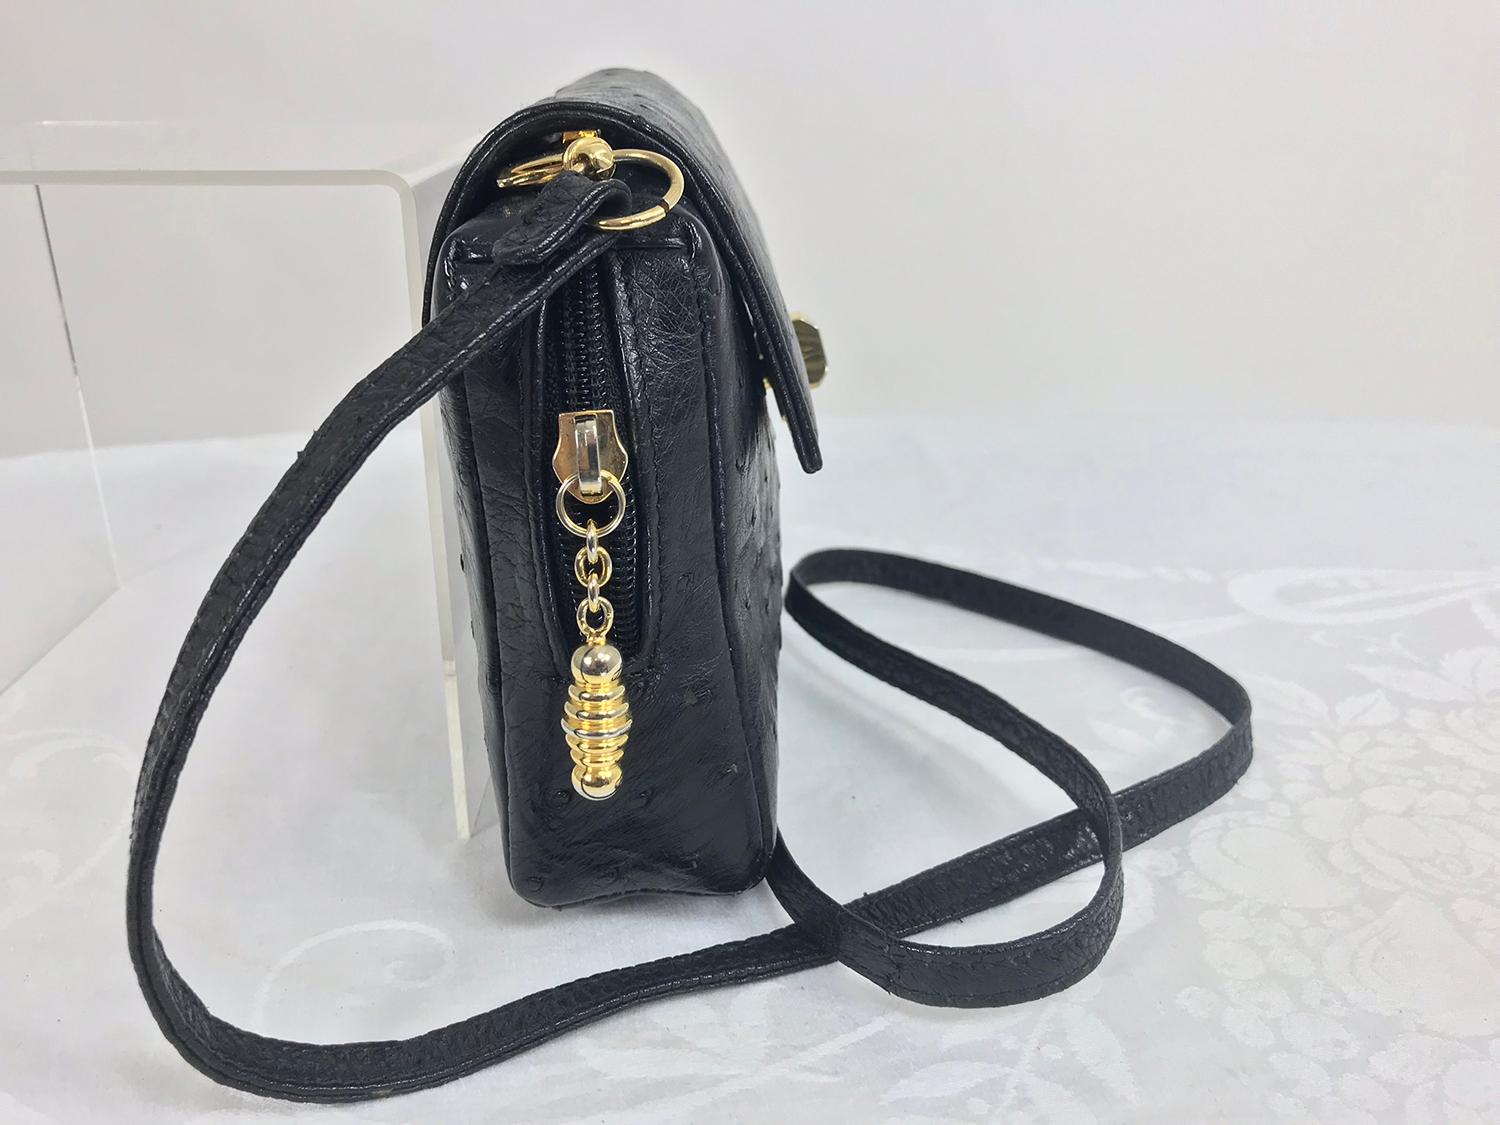 Helene Black Ostrich Cross Body/Clutch Handtasche Made in Italy. Diese schöne Tasche hat die perfekte Größe für einen Shopping-Tag, sie fasst alles, was Sie brauchen, und lässt Ihnen die Hände frei! Nehmen Sie den Riemen ab und tragen Sie sie als